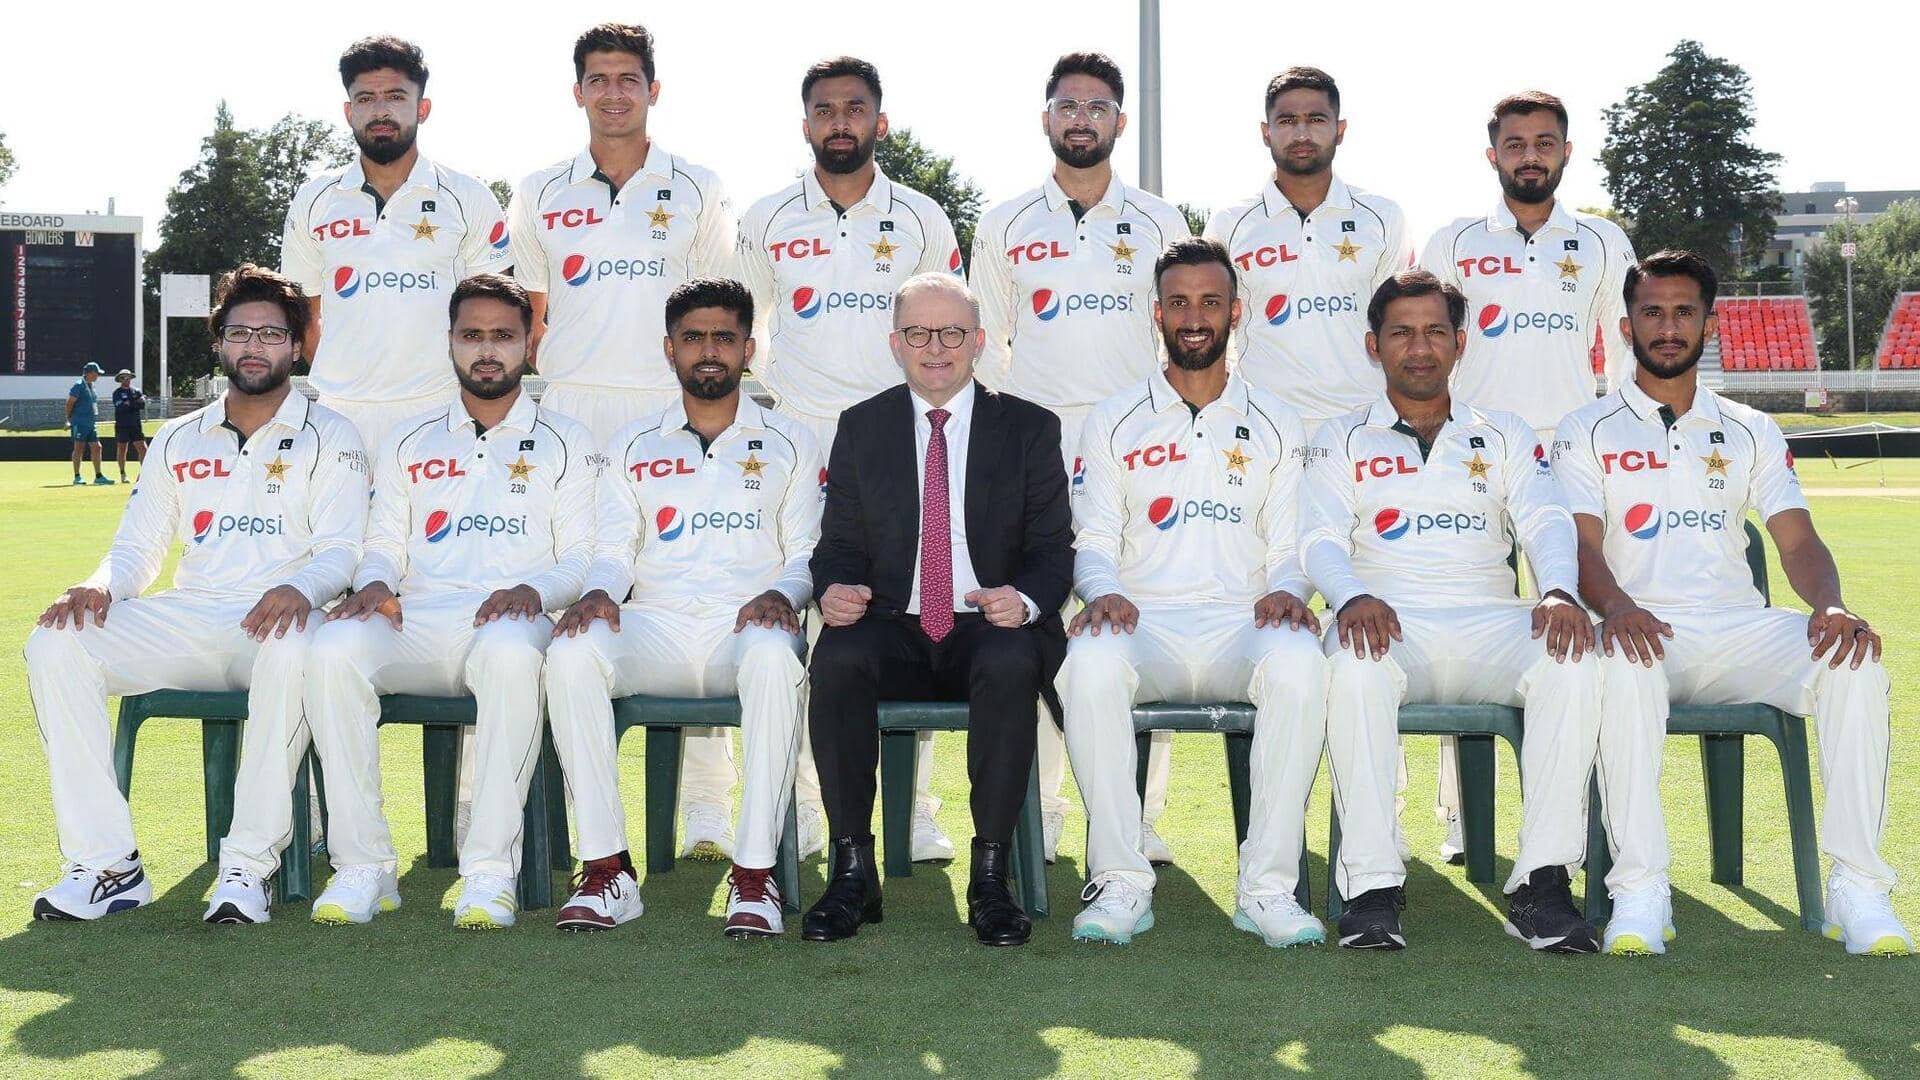 पाकिस्तान क्रिकेट टीम डॉक्टरों के बिना ही ऑस्ट्रेलिया दौरे पर पहुंची, जानिए क्या है पूरा मामला